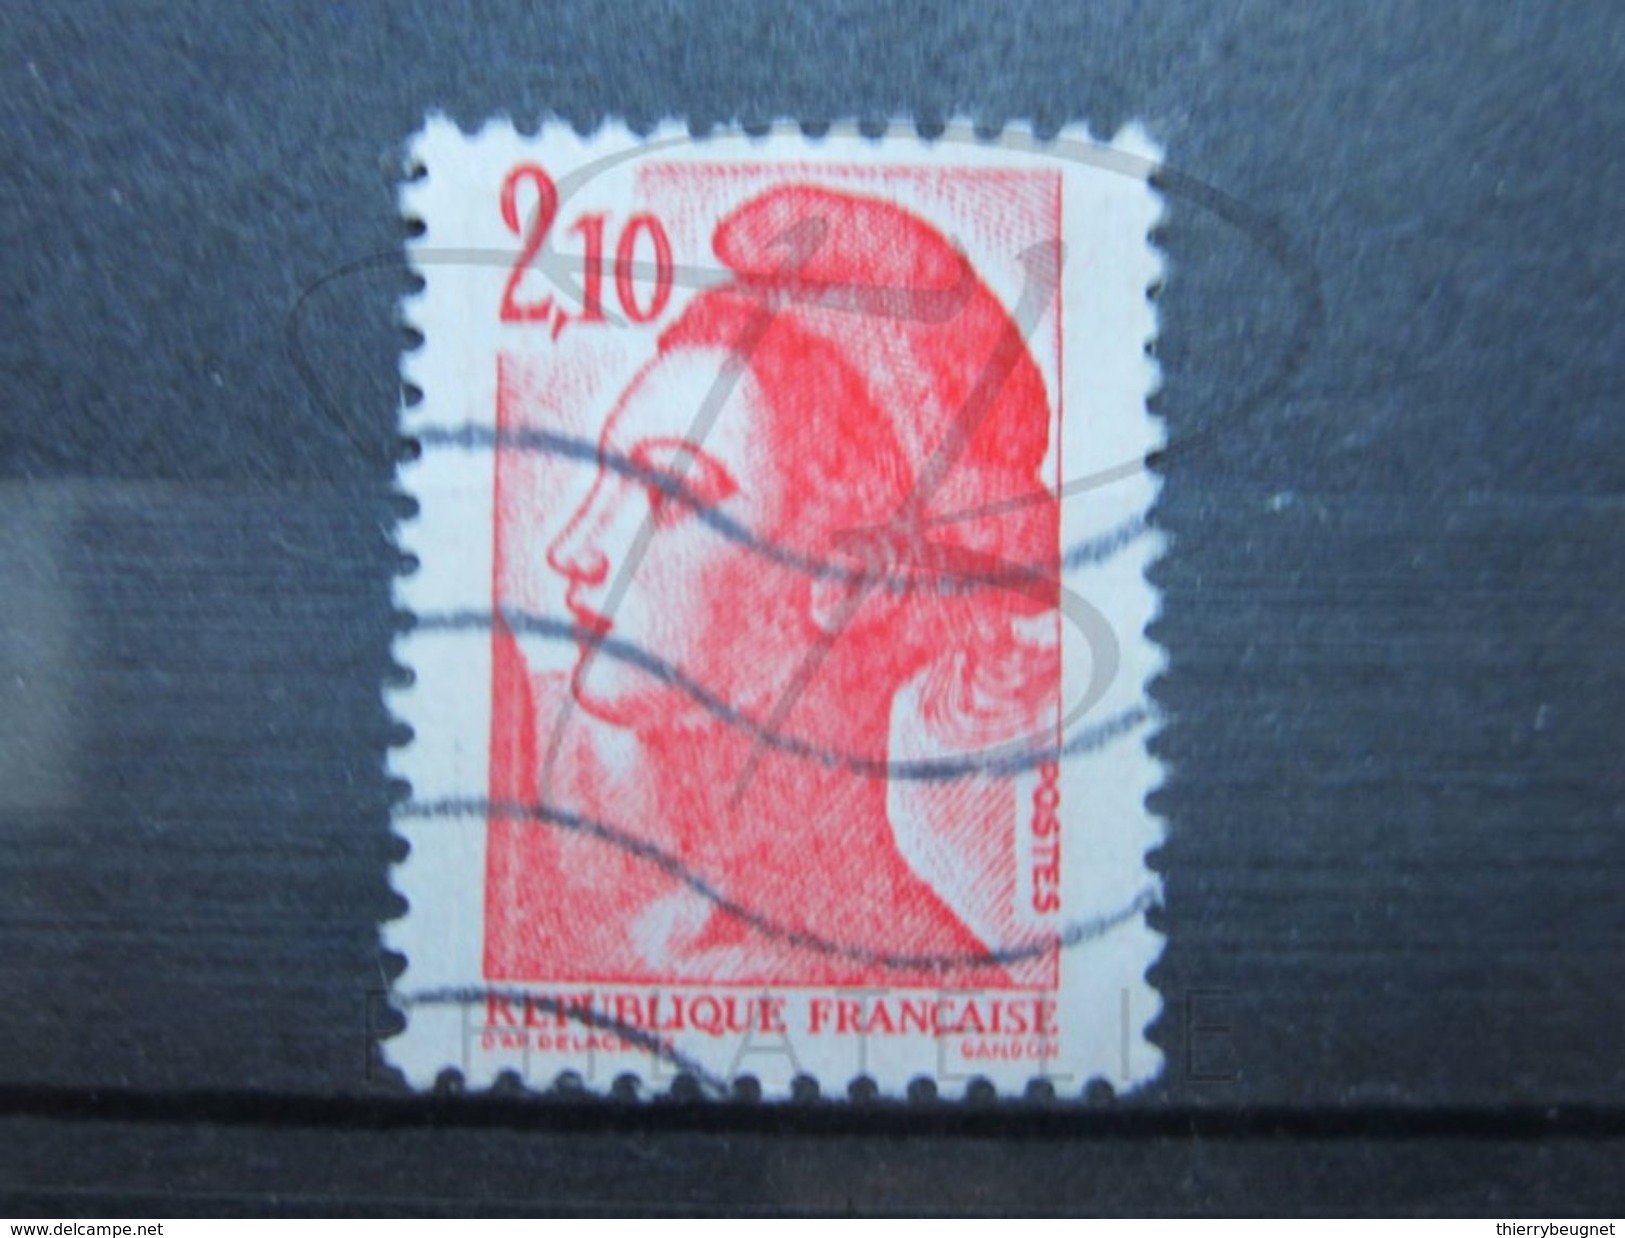 VEND BEAU TIMBRE DE FRANCE N° 2319 , TACHE ROUGE DANS LE BONNET !!! - Used Stamps